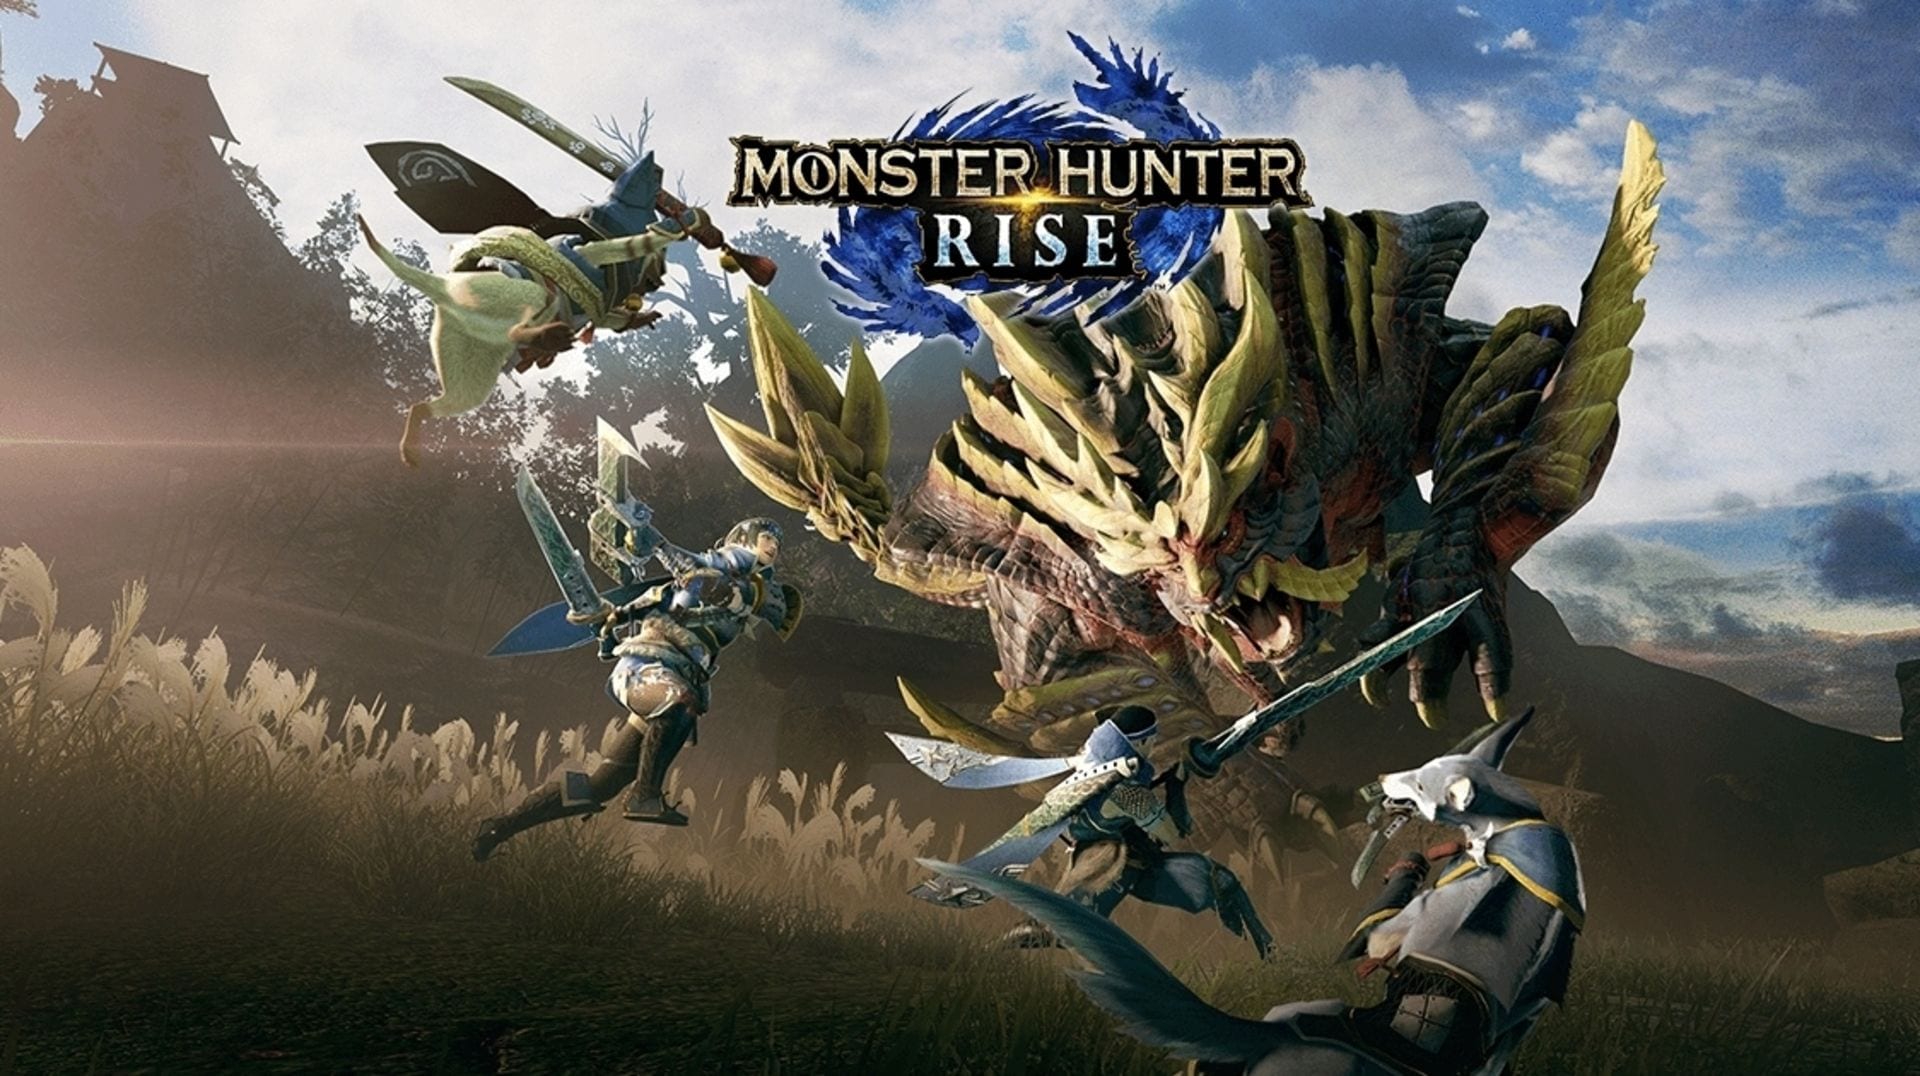 Monster Hunter Rise ตีตลาด! ยอดขายถล่มทลายบน Switch แล้วมากกว่า 5 ล้านชุดทั่วโลก